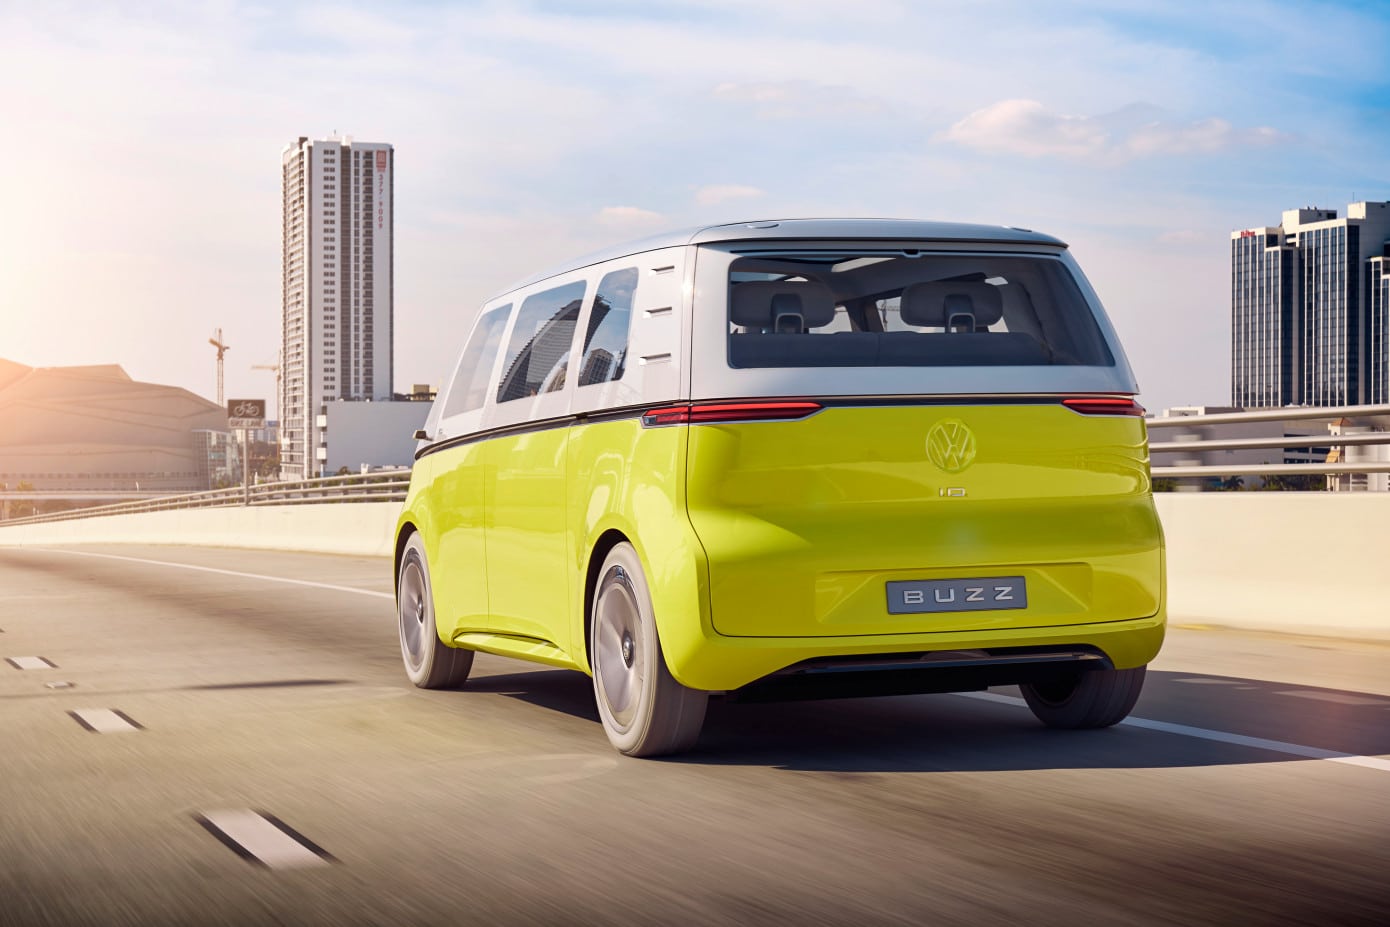 Volkswagen va construire des navettes autonomes pour la ville de Doha.